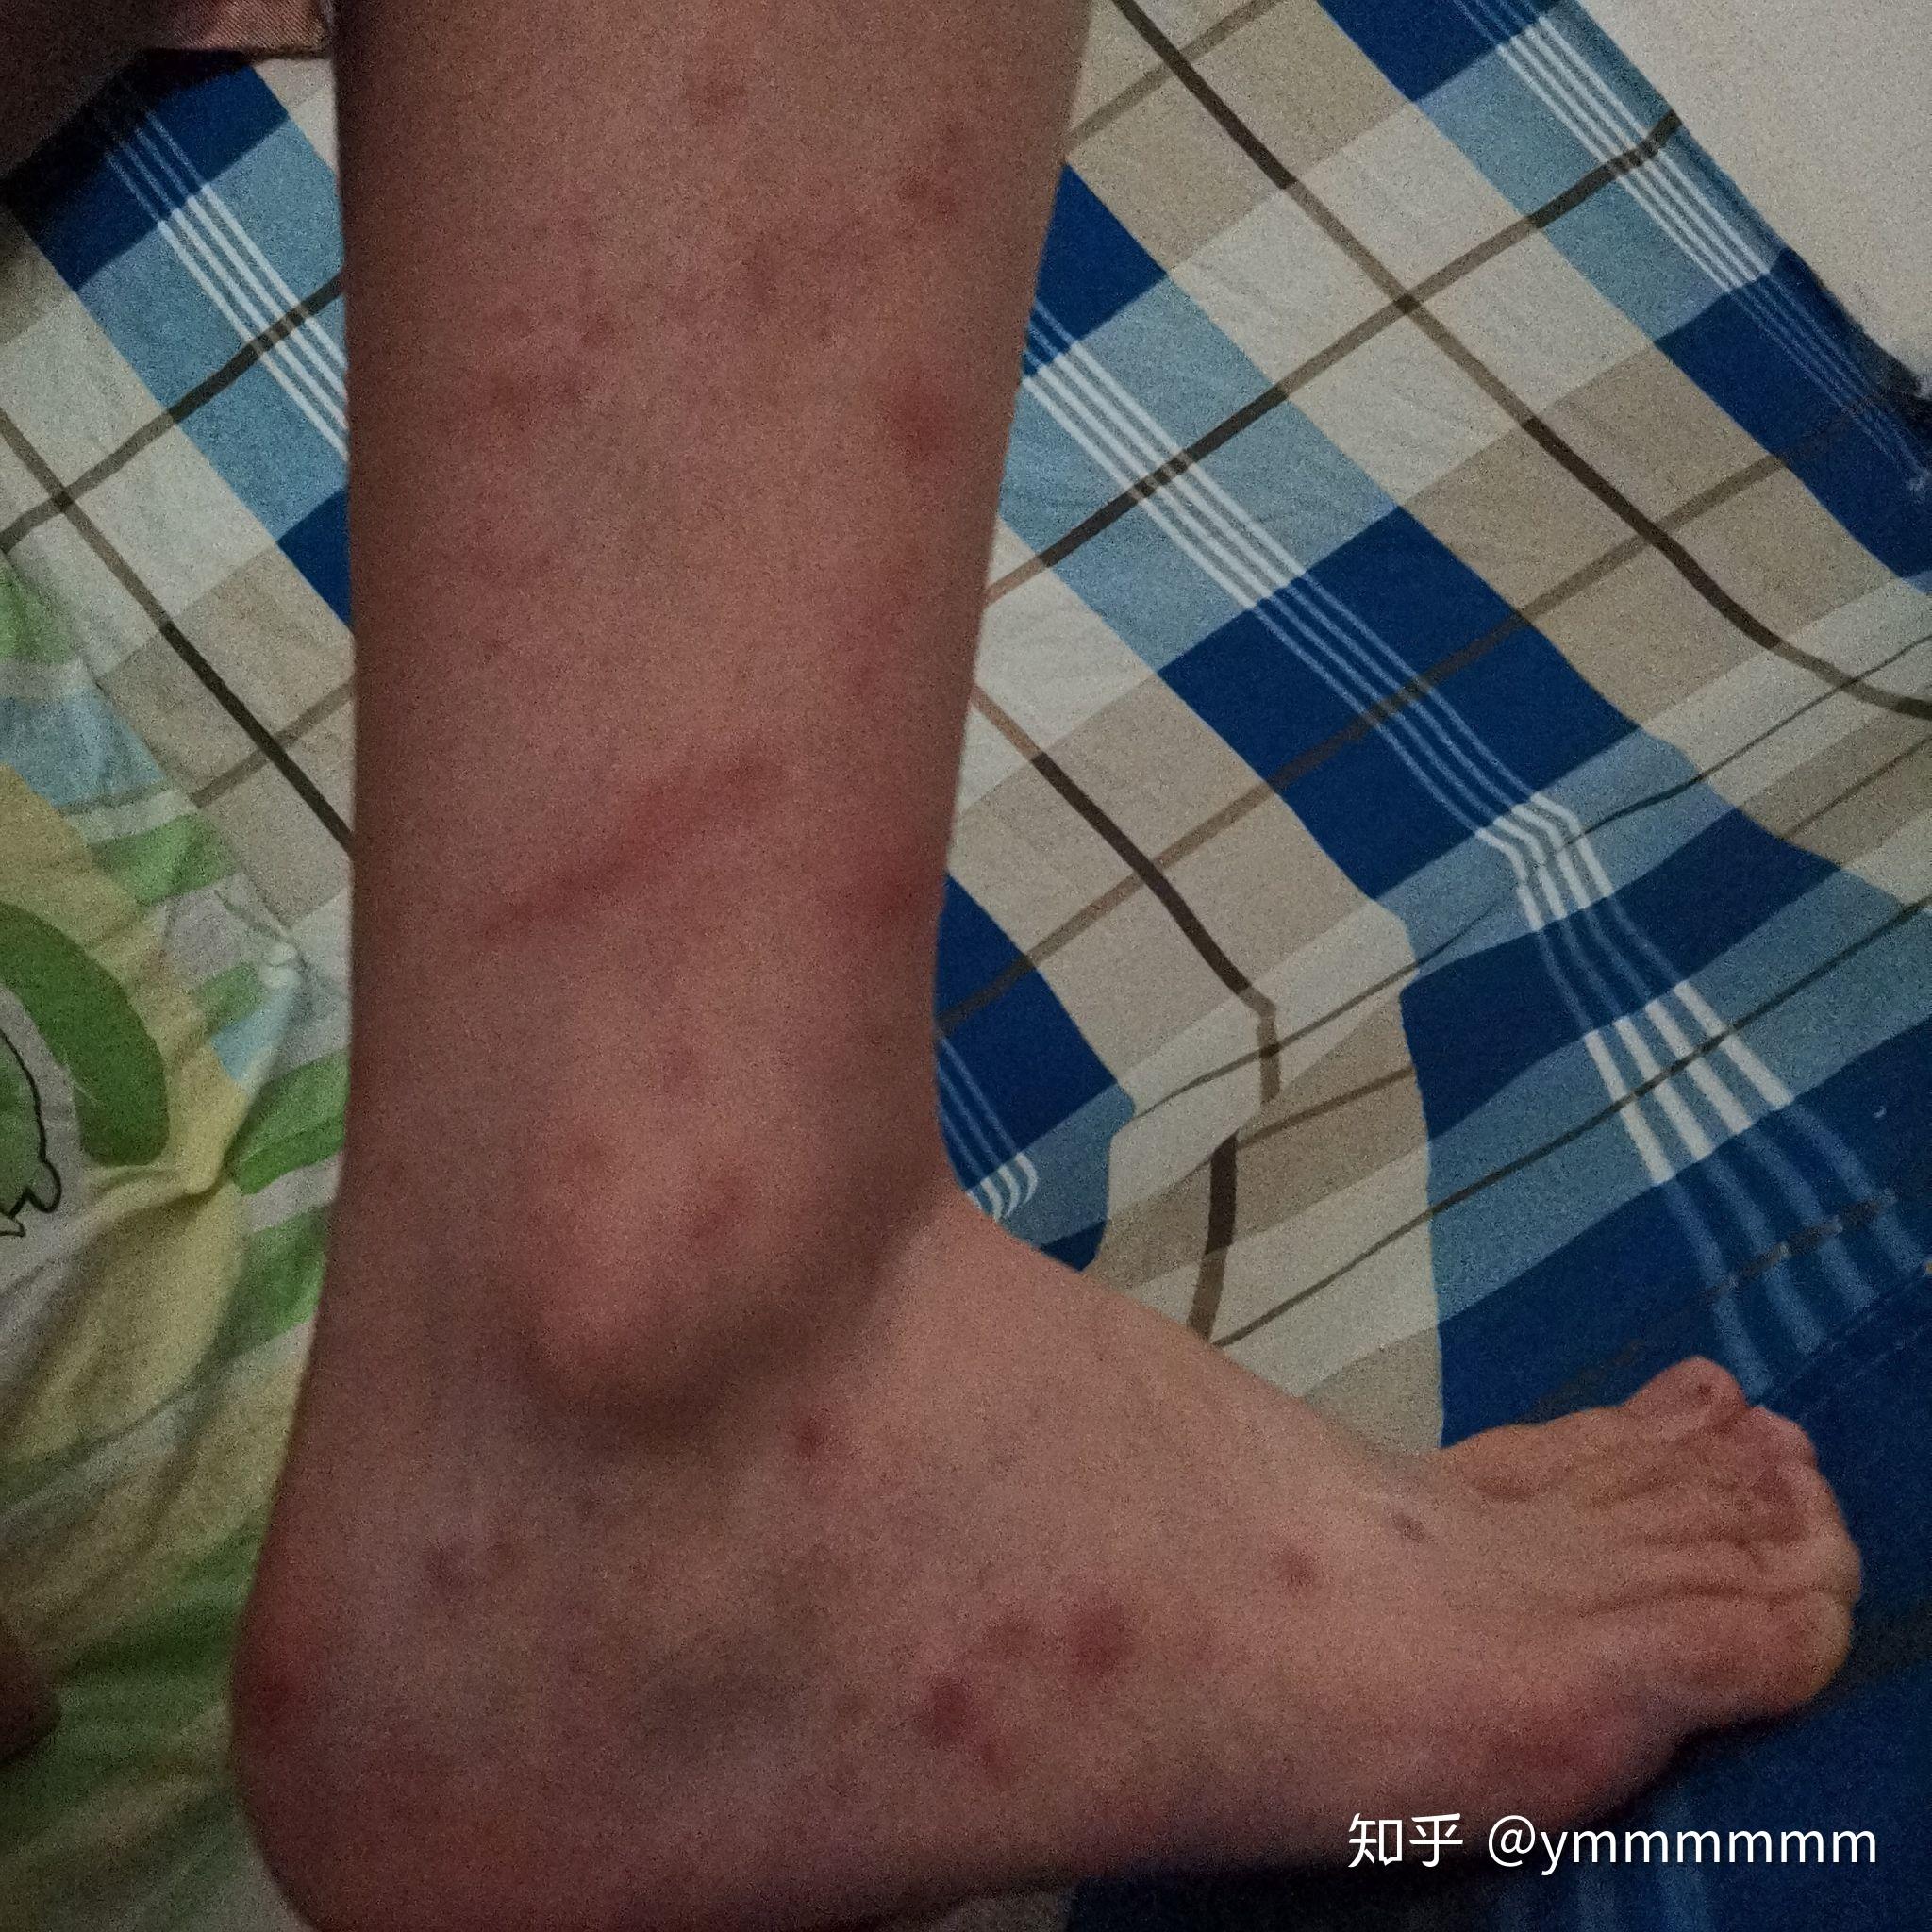 虫咬性荨麻疹一个多月还没好,怎么根治? 